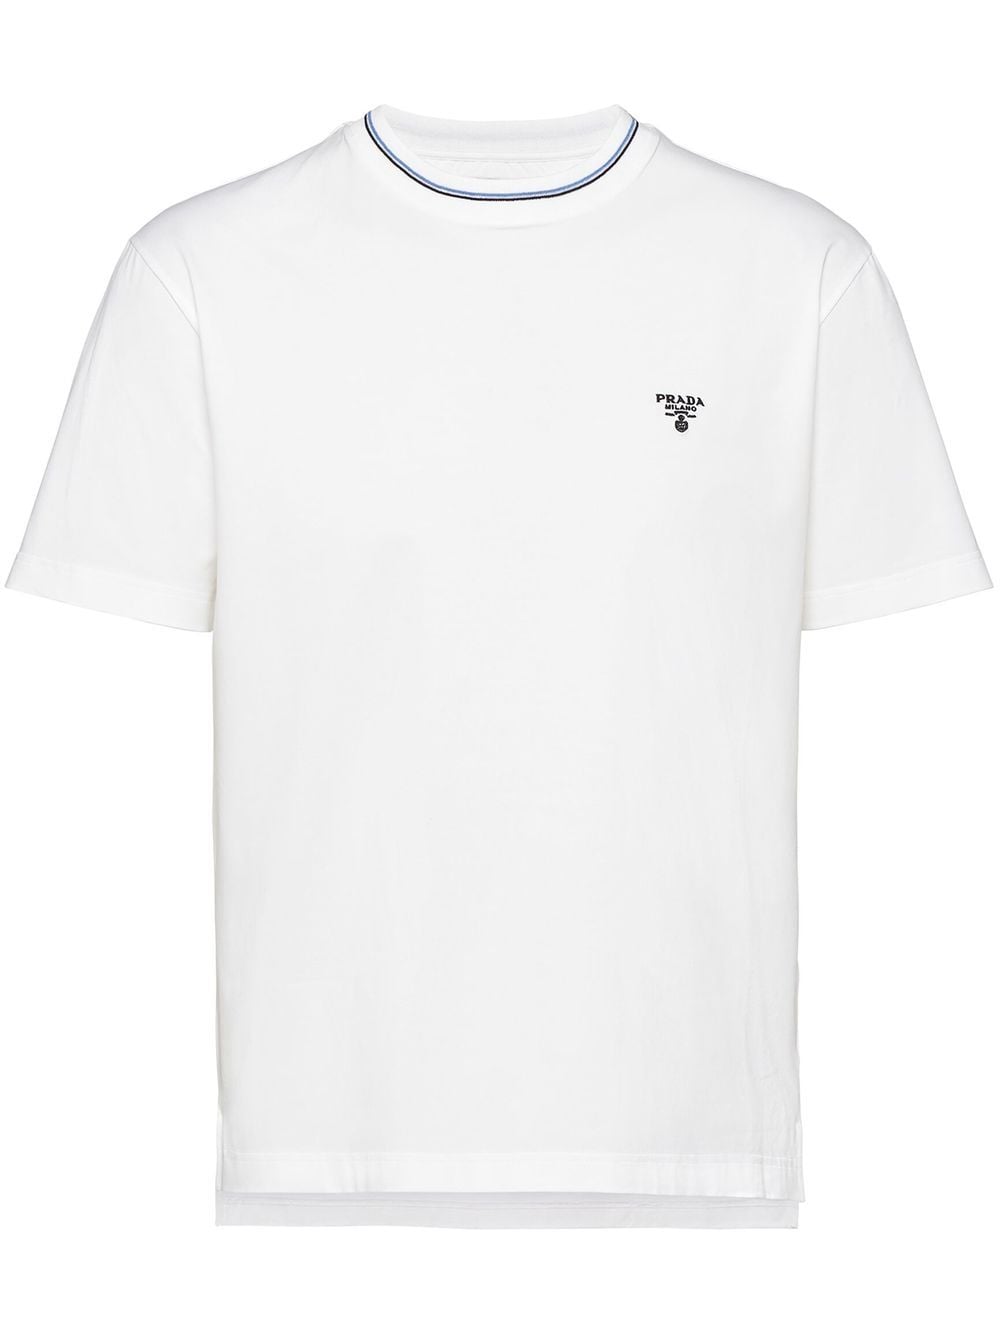 Prada white t shirt, av 82% bra försäljning 